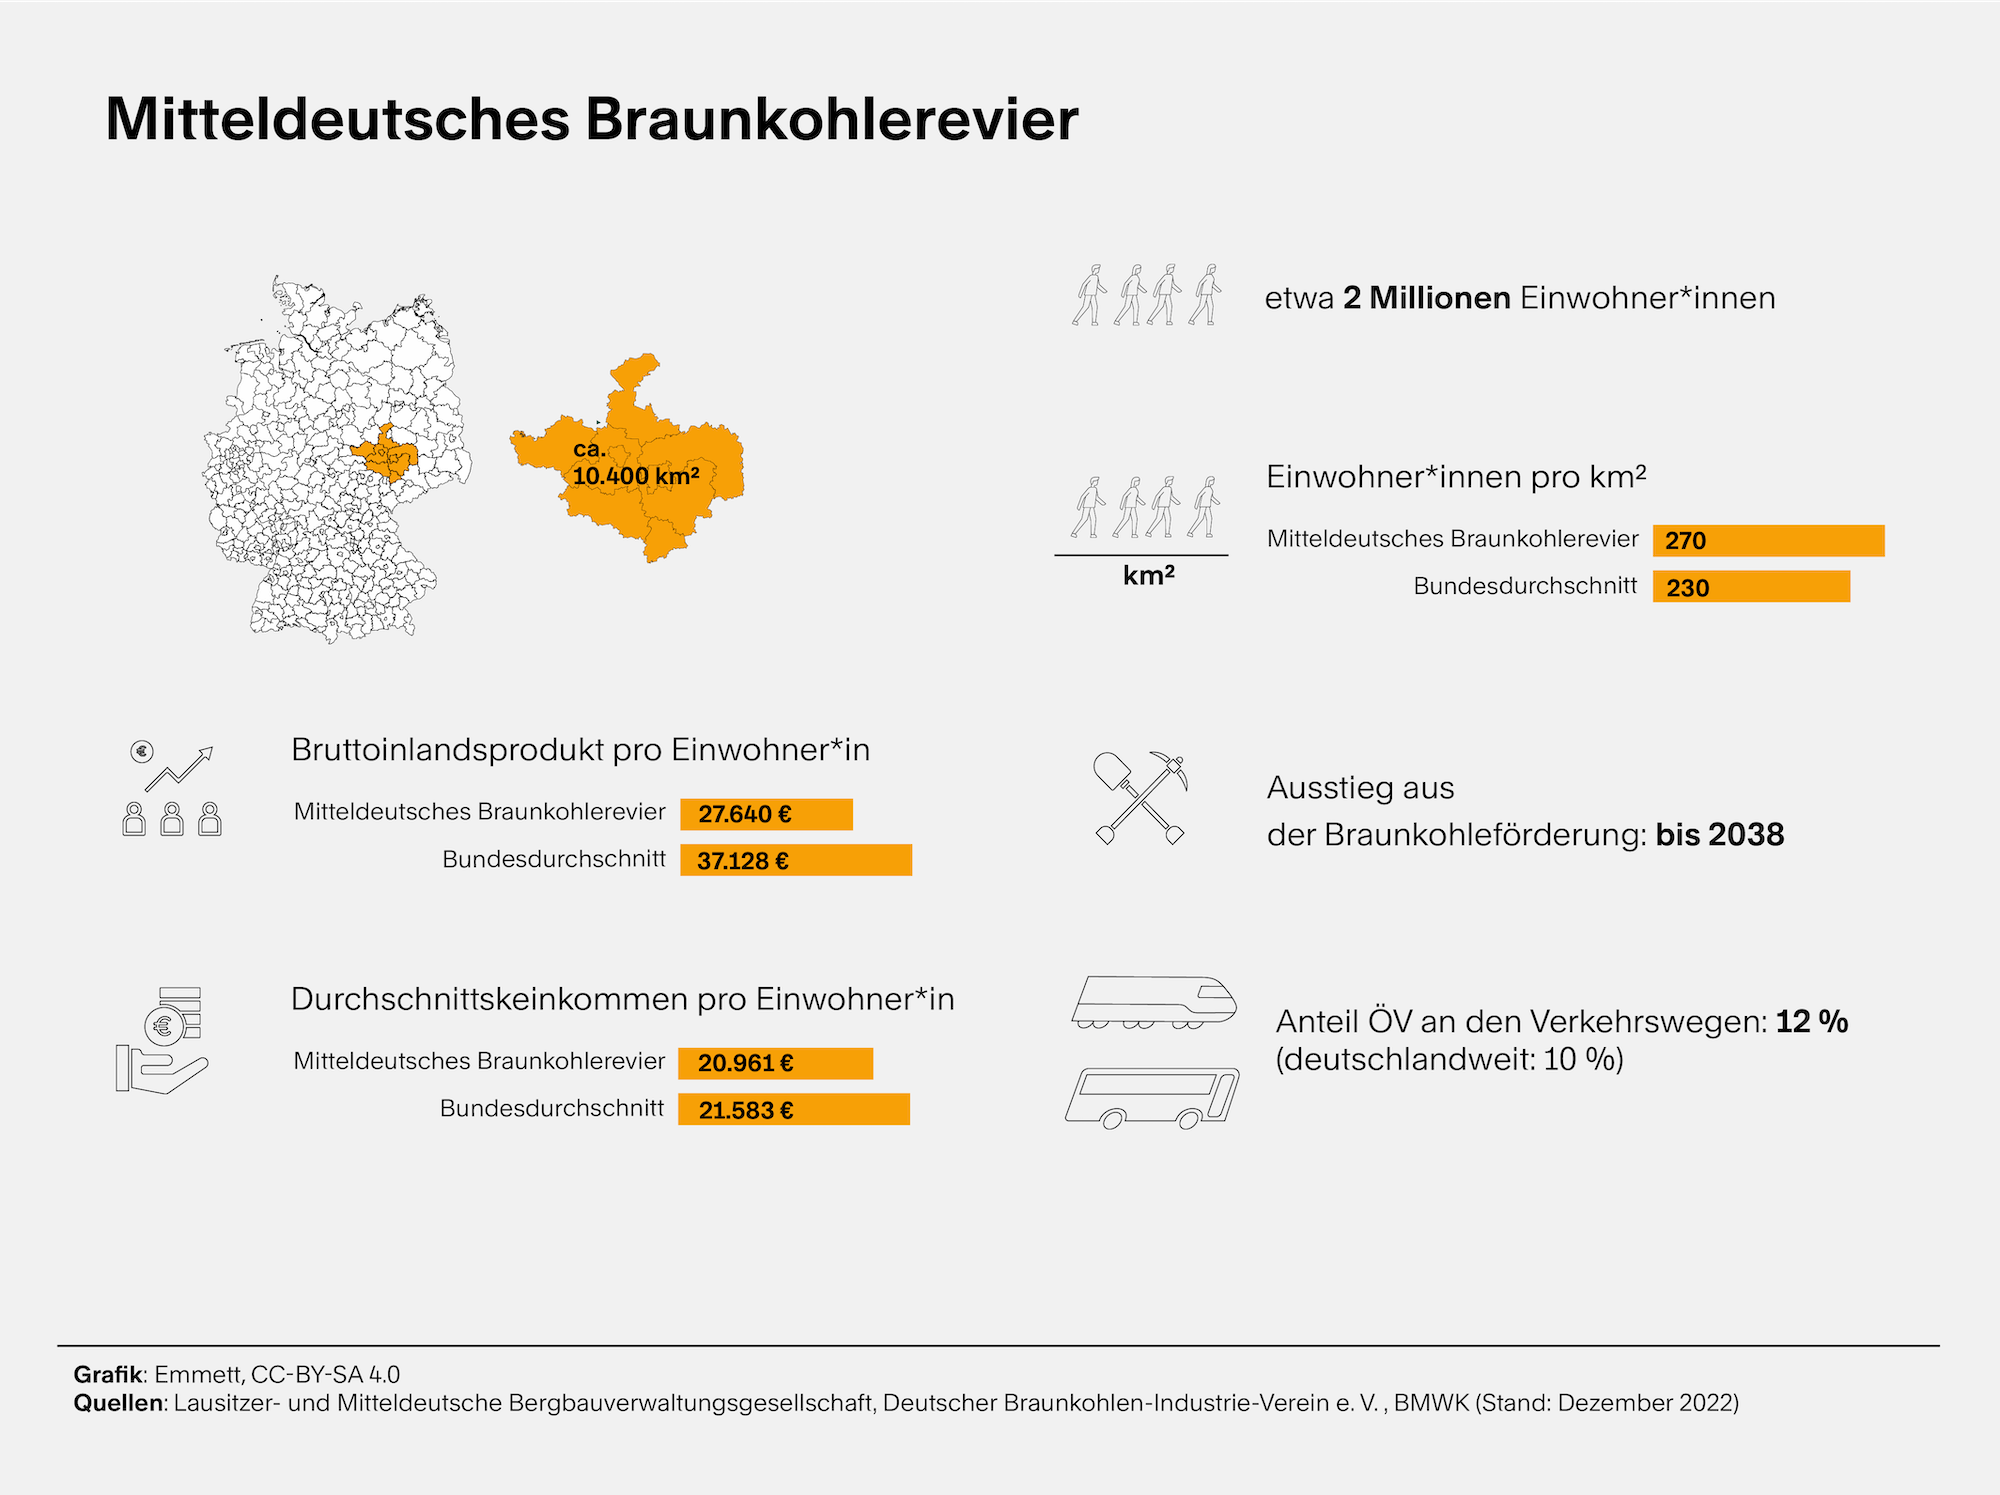 Mehrere kleine Grafiken plus Text. Sie informieren über demographische Daten zum Mitteldeutschen Braunkohlerevier, auch zum Anteil des öffentlichen Verkehrs an den Verkehrswegen in dem Gebiet